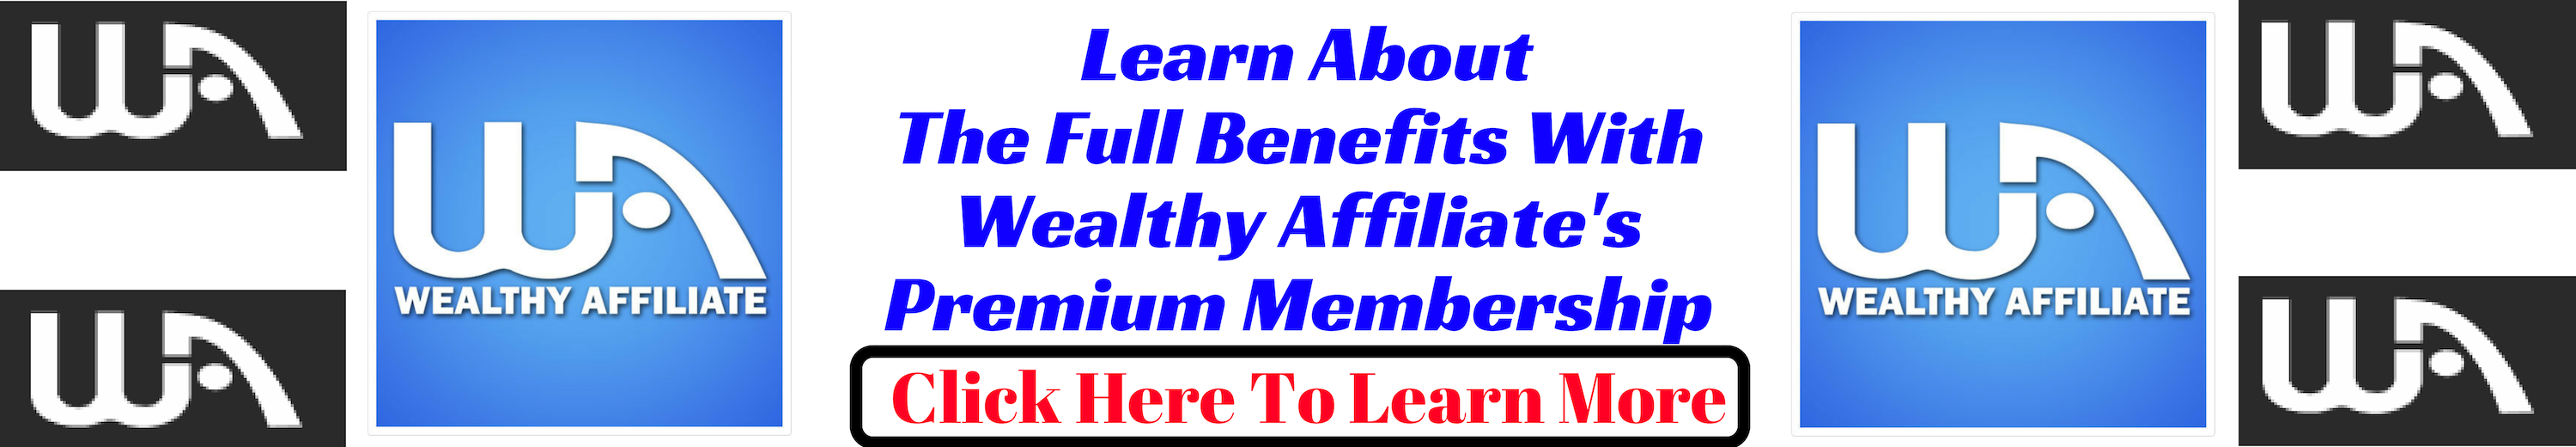 Wealthy Affiliate Premium Membership Info